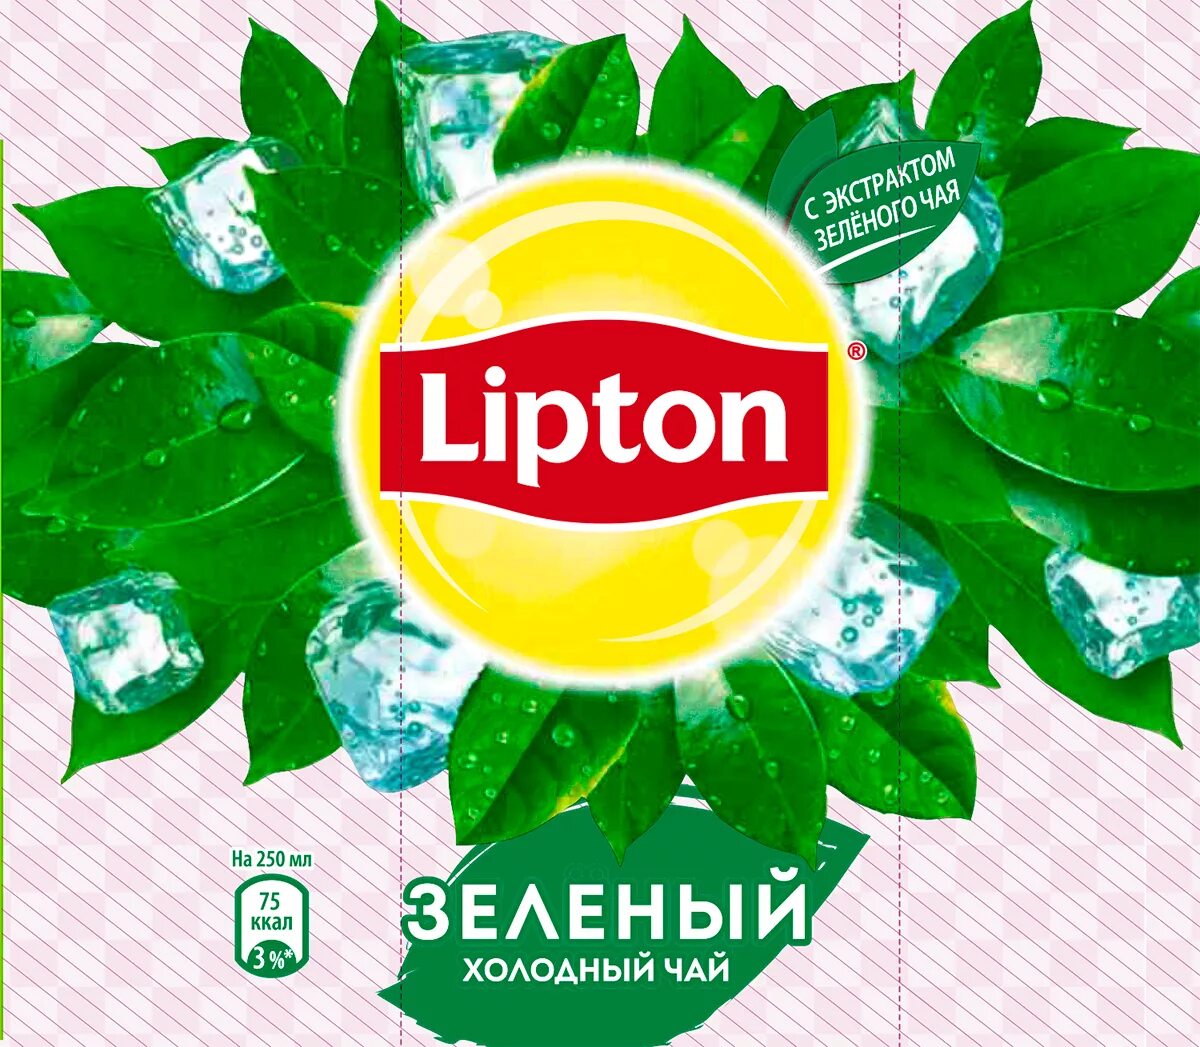 Картинки липтона. Холодный зеленый чай Липтон этикетка. Холодный чай Липтон логотип. Надпись Липтон зеленый чай. Этикетка Липтон холодный чай.